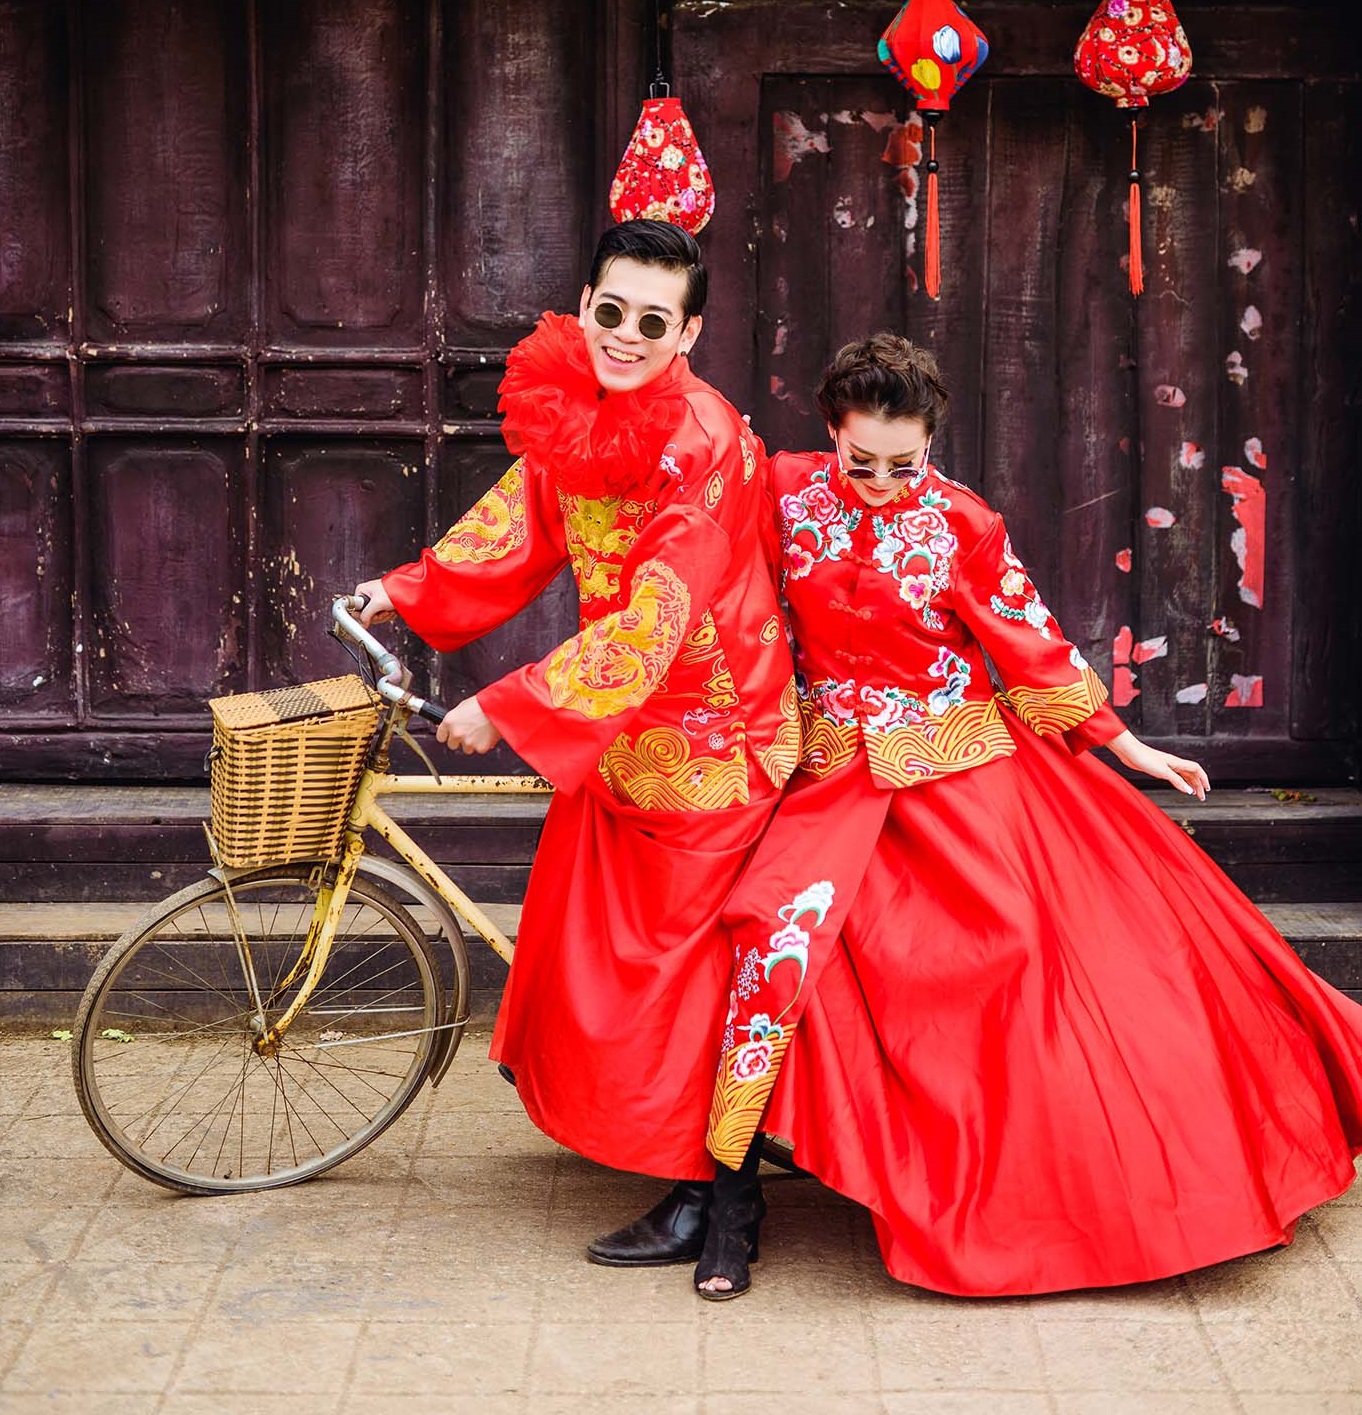 Chụp ảnh cưới theo kiểu Trung Quốc sẽ mang đến cho cặp đôi một không gian đích thực của văn hóa 5.000 năm lịch sử. Chúng tôi cam kết sẽ giúp bạn tạo ra những bức ảnh đẹp như trong những phim cổ trang nổi tiếng. Bạn có thể tự tin bước vào một lễ đường cổ kính và để đội ngũ của chúng tôi ghi lại những khoảnh khắc quý giá trong ngày trọng đại.